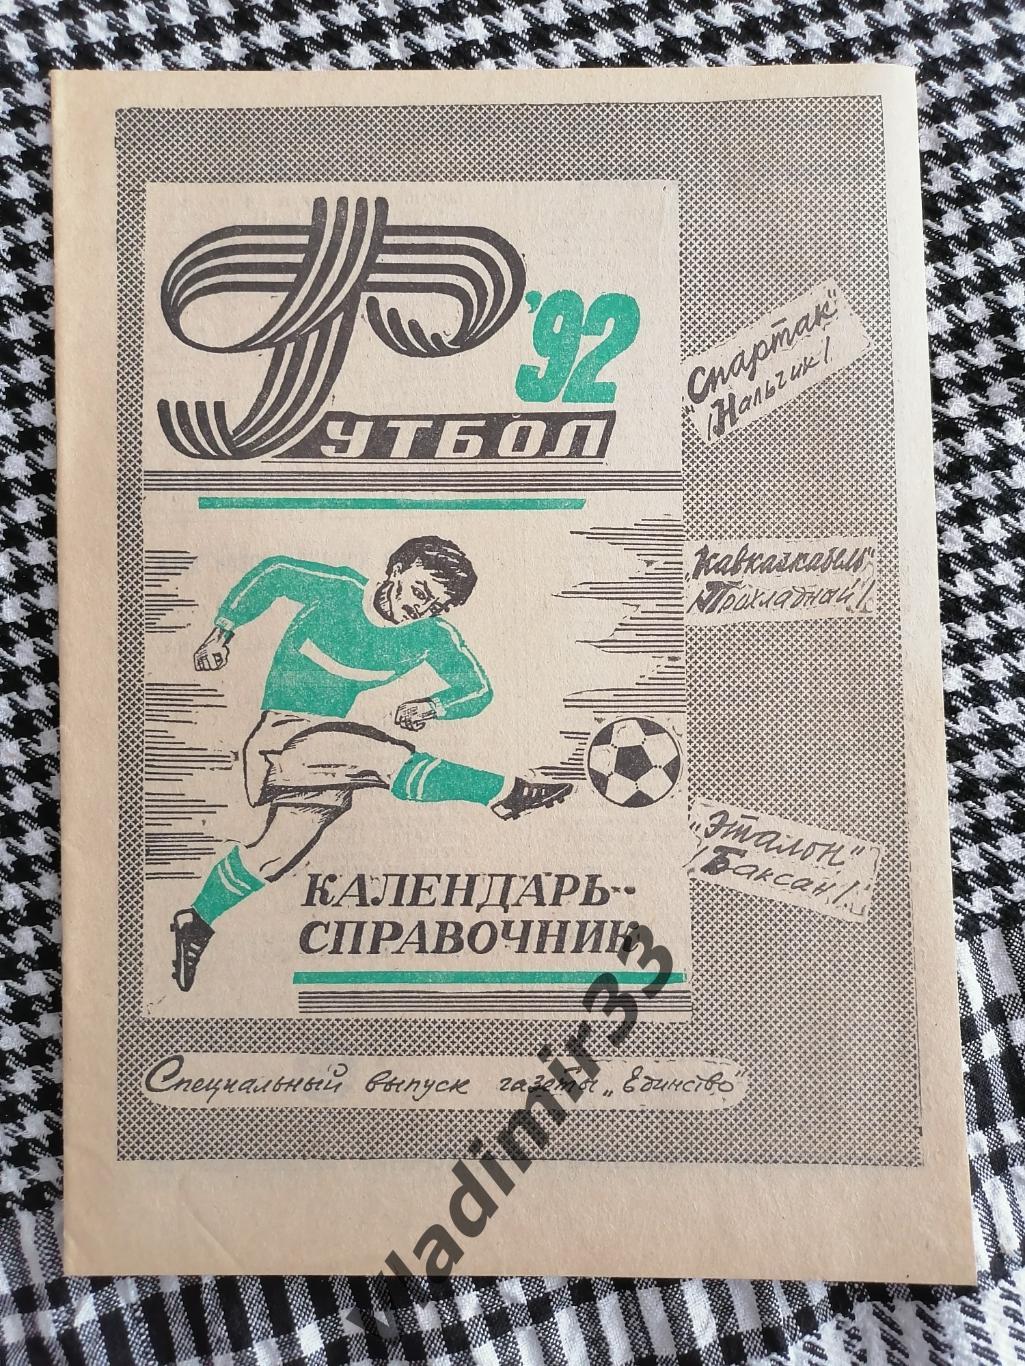 Календарь - справочник Нальчик, Прохладный, Баксан 1992